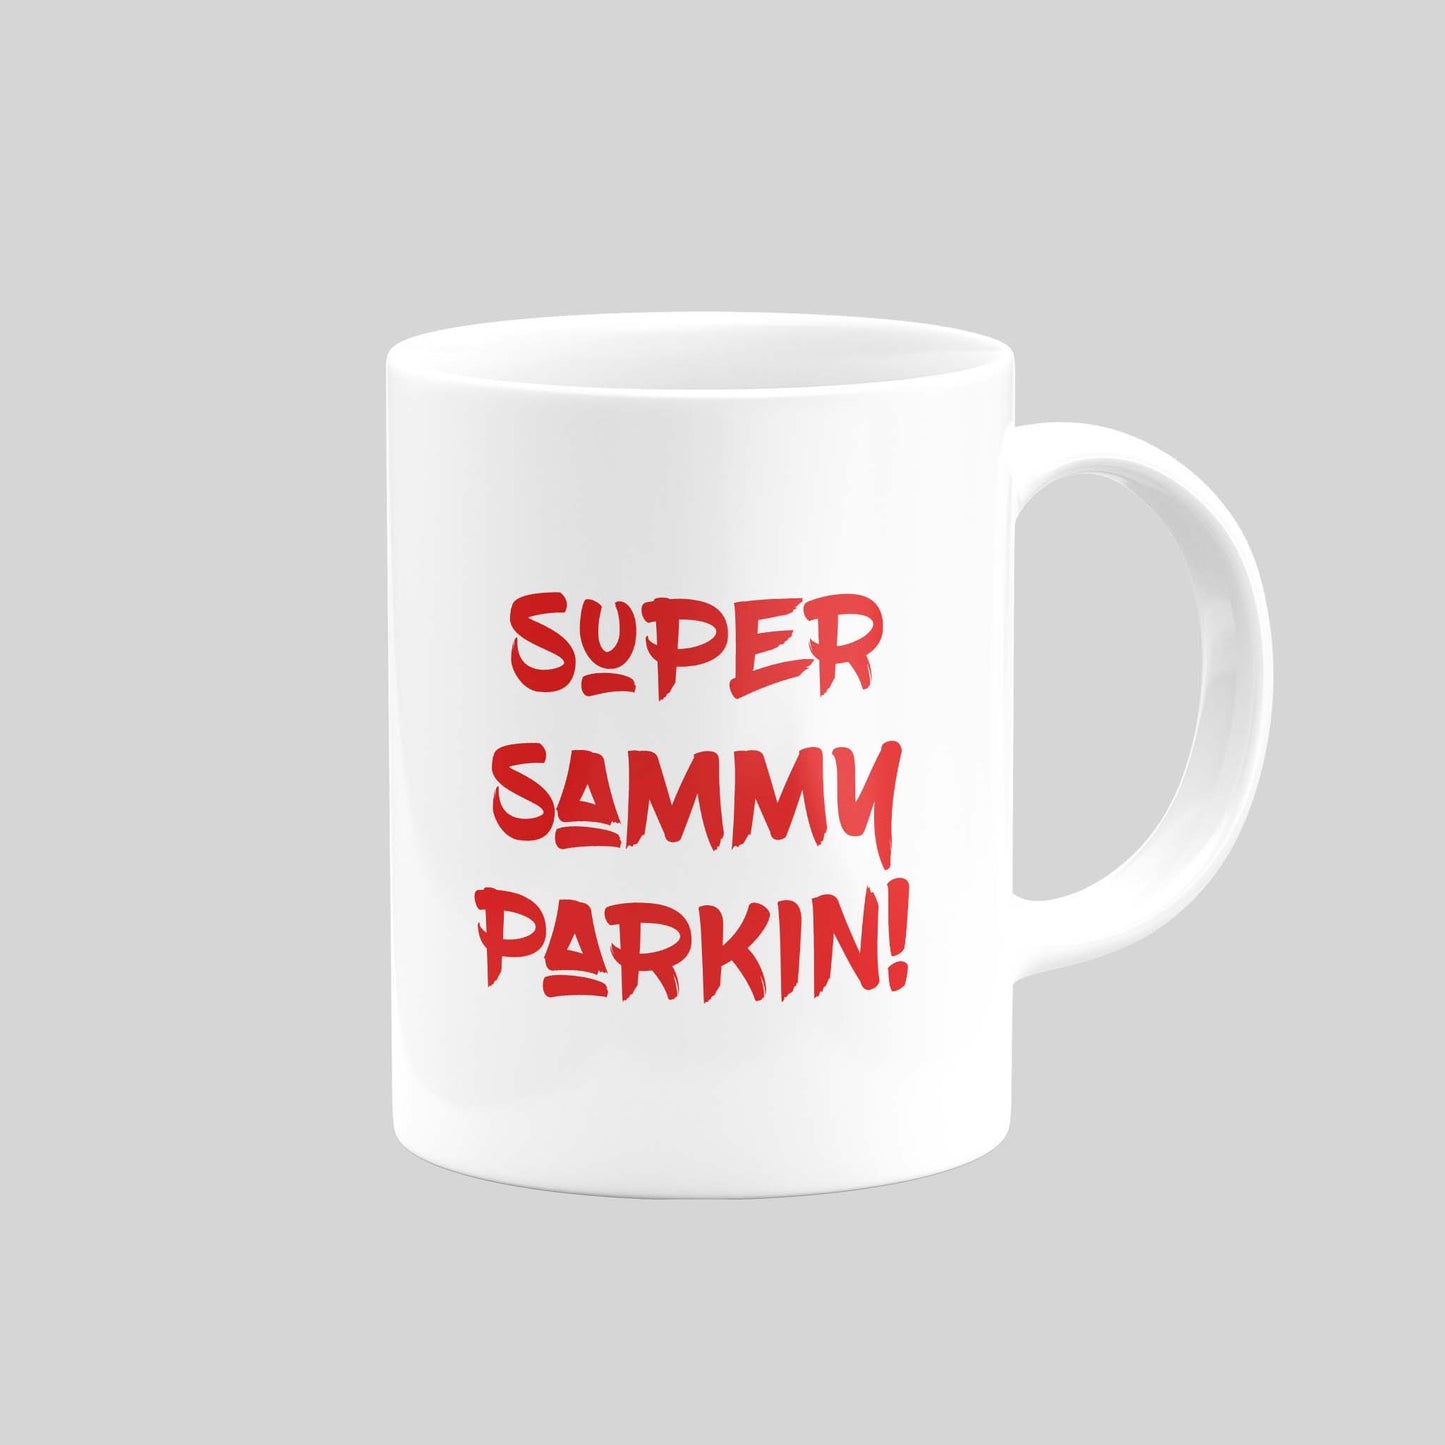 Sam Parkin Mug